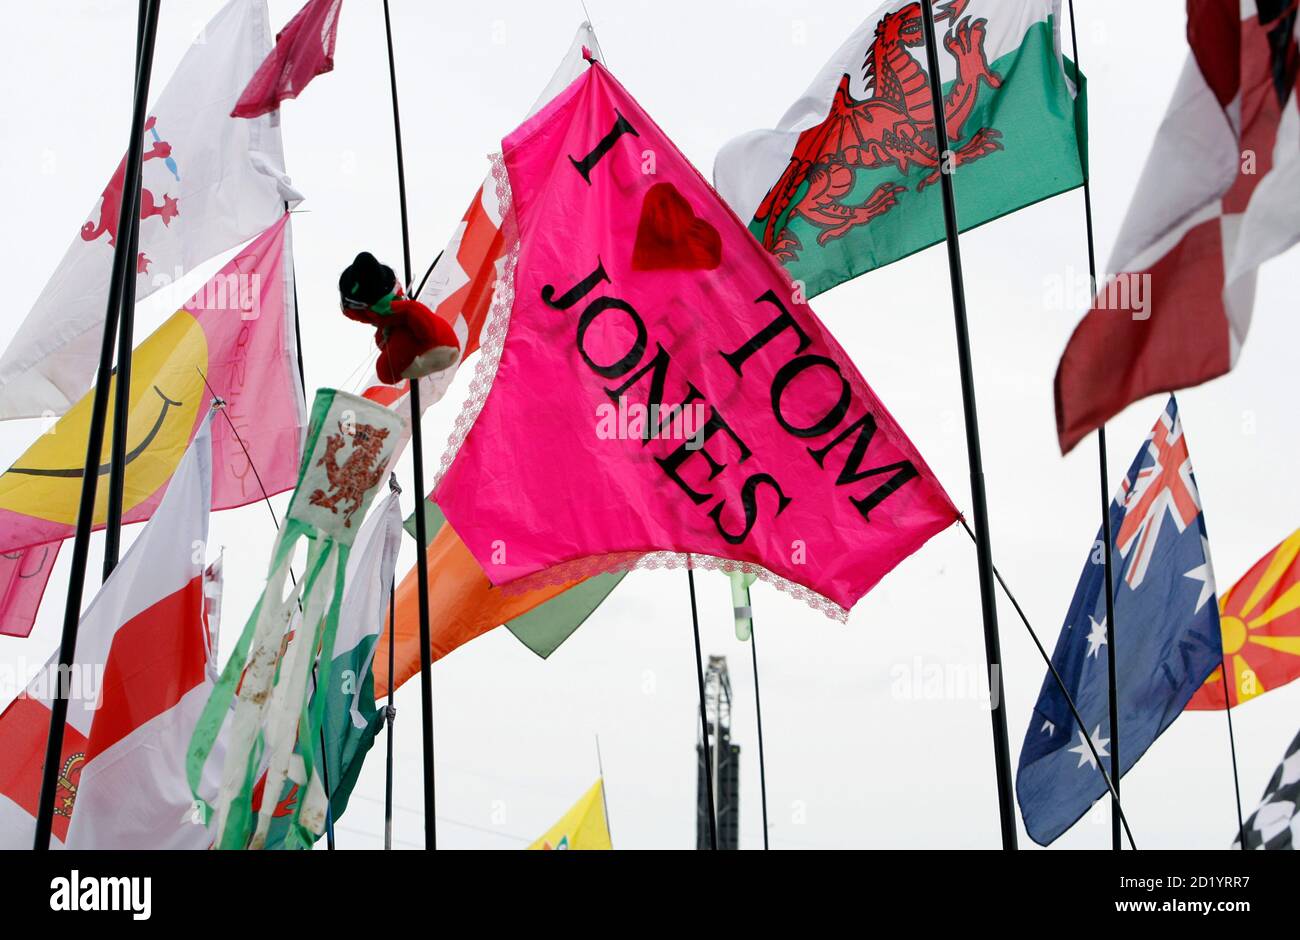 Une culotte géante en forme de drapeau avec le slogan « I love Tom Jones »  vole parmi d'autres drapeaux lors de la représentation du chanteur  britannique Tom Jones au Glastonbury Festival